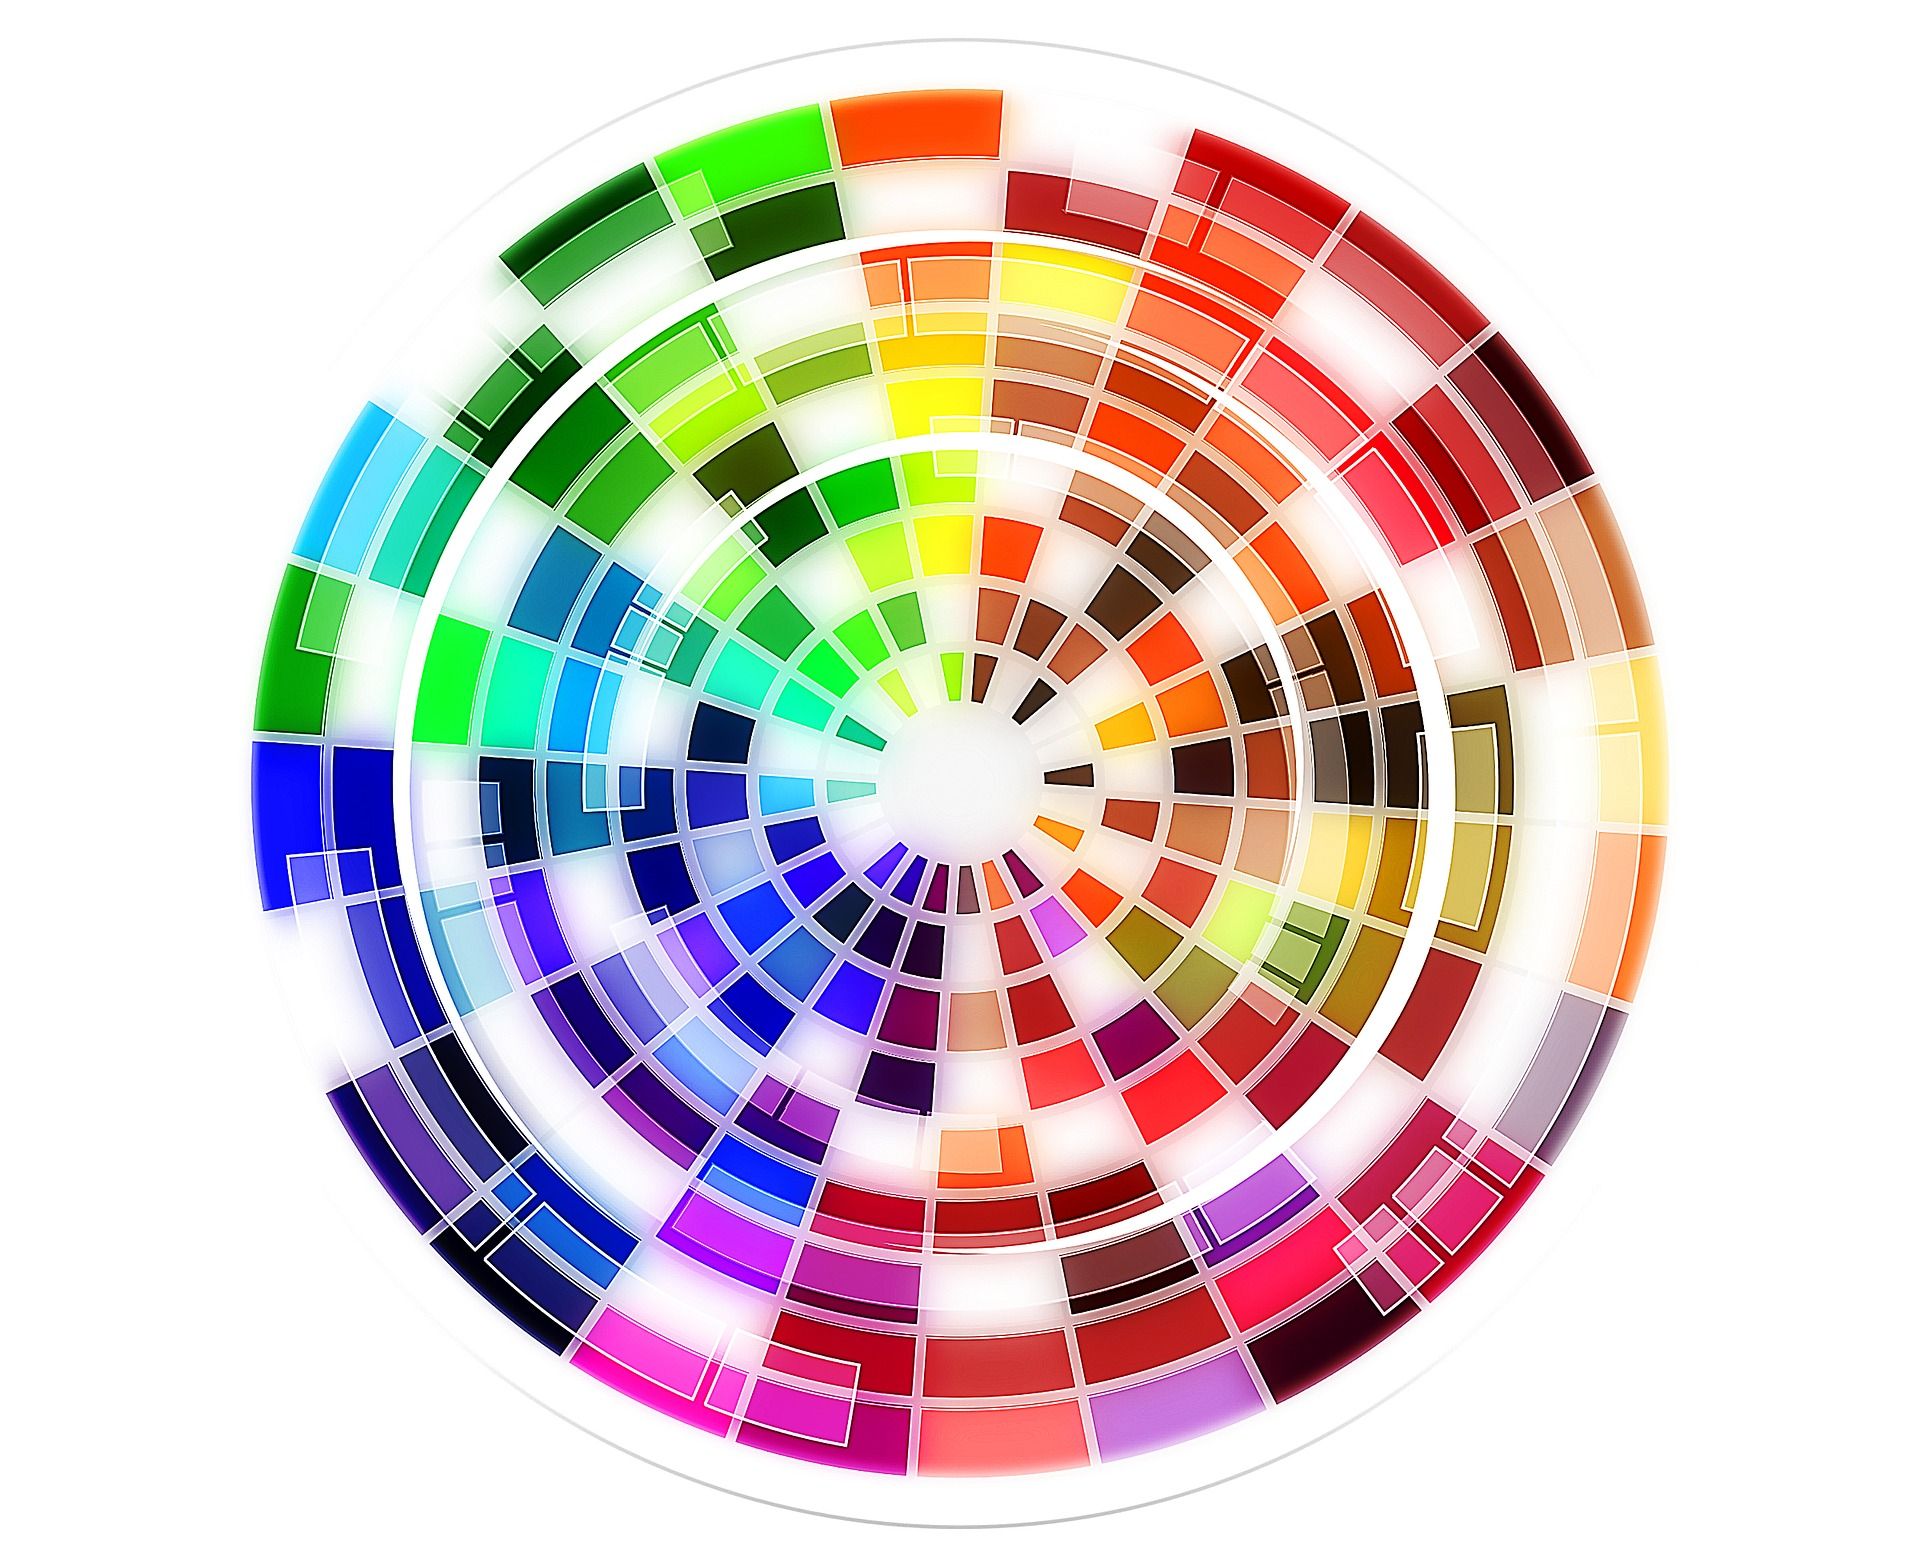 Подобрать цвет фона. Цветовой круг Иттена. Спектр круг Иттена. Цветовой круг для дизайнеров. Цветовая палитра круглая.